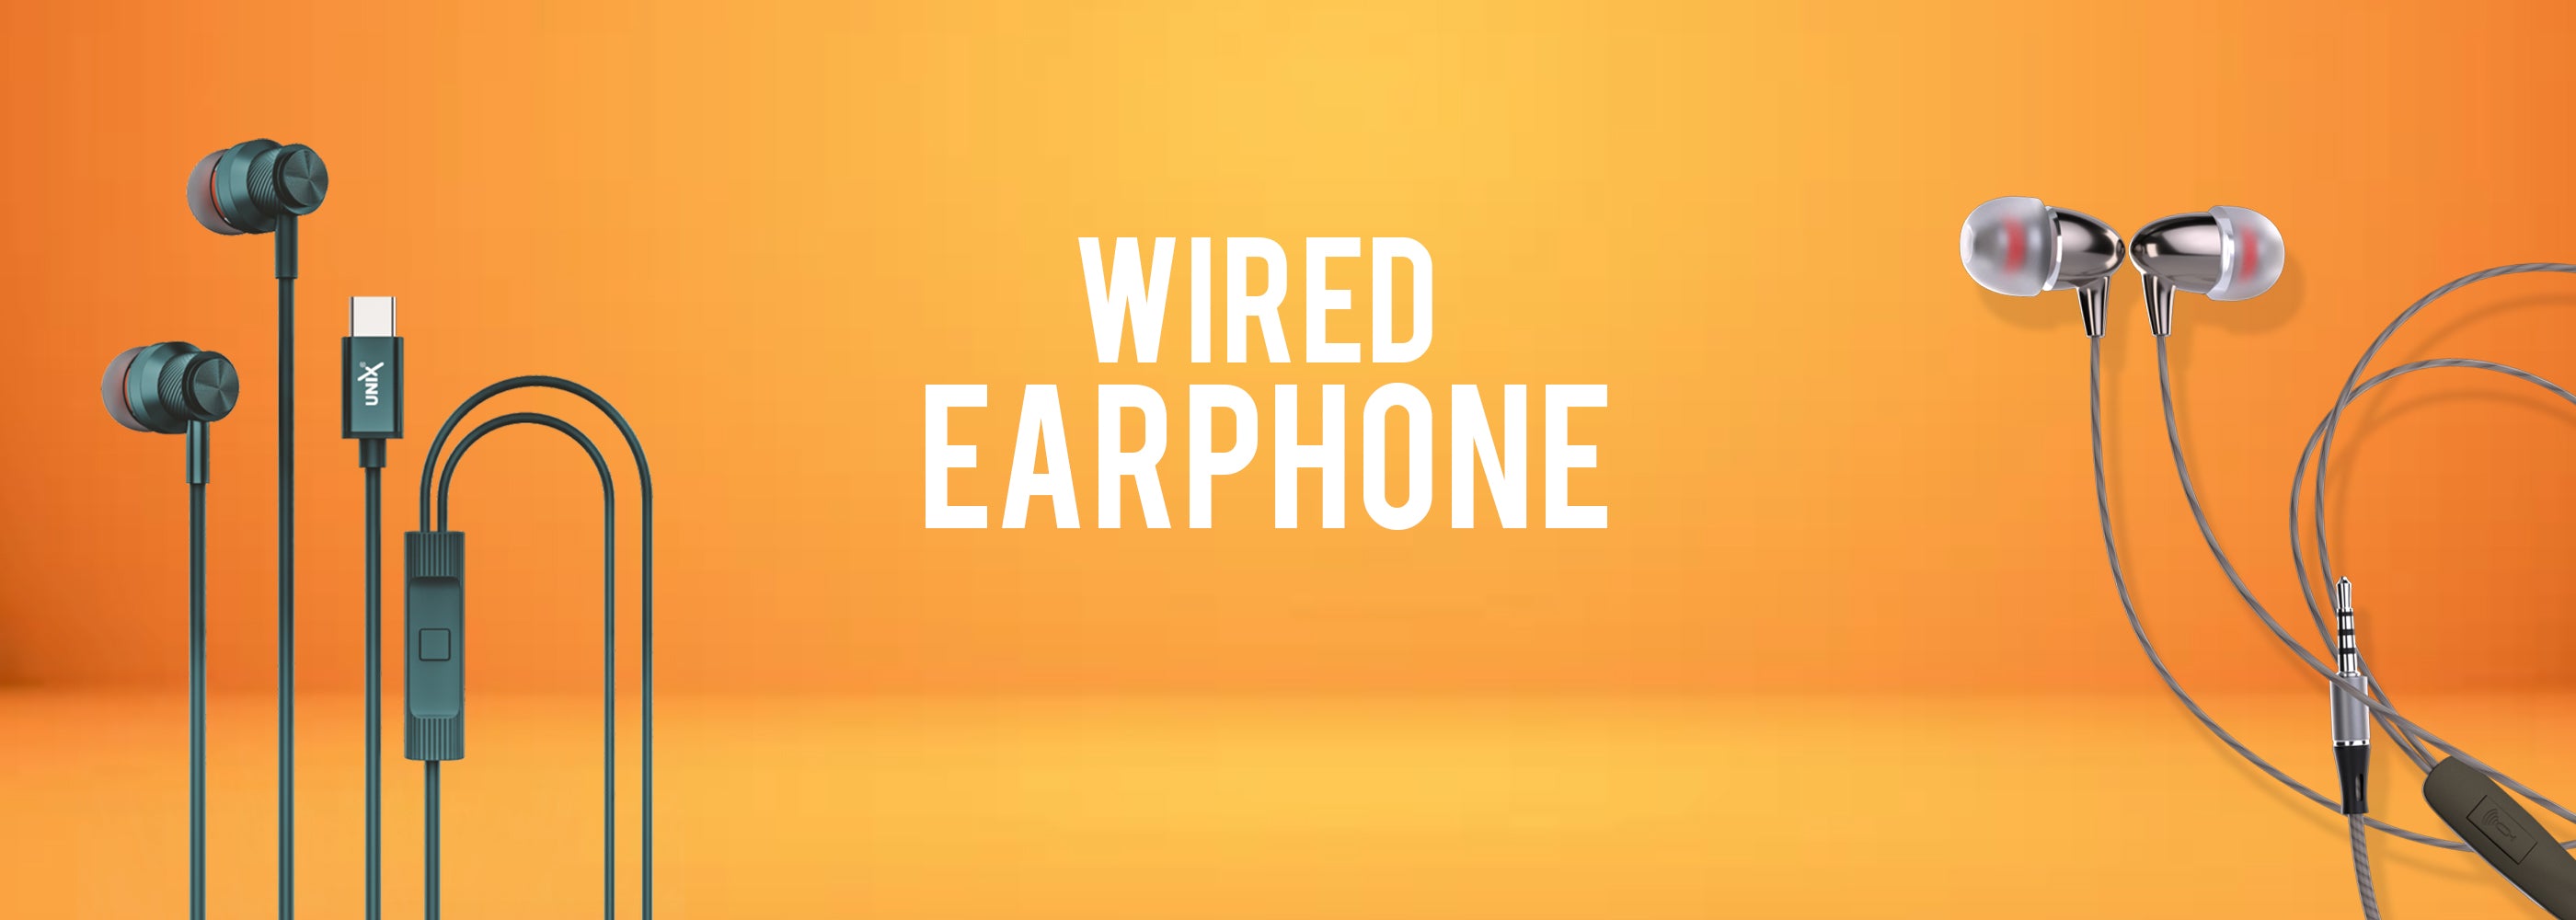 Wired Earphones